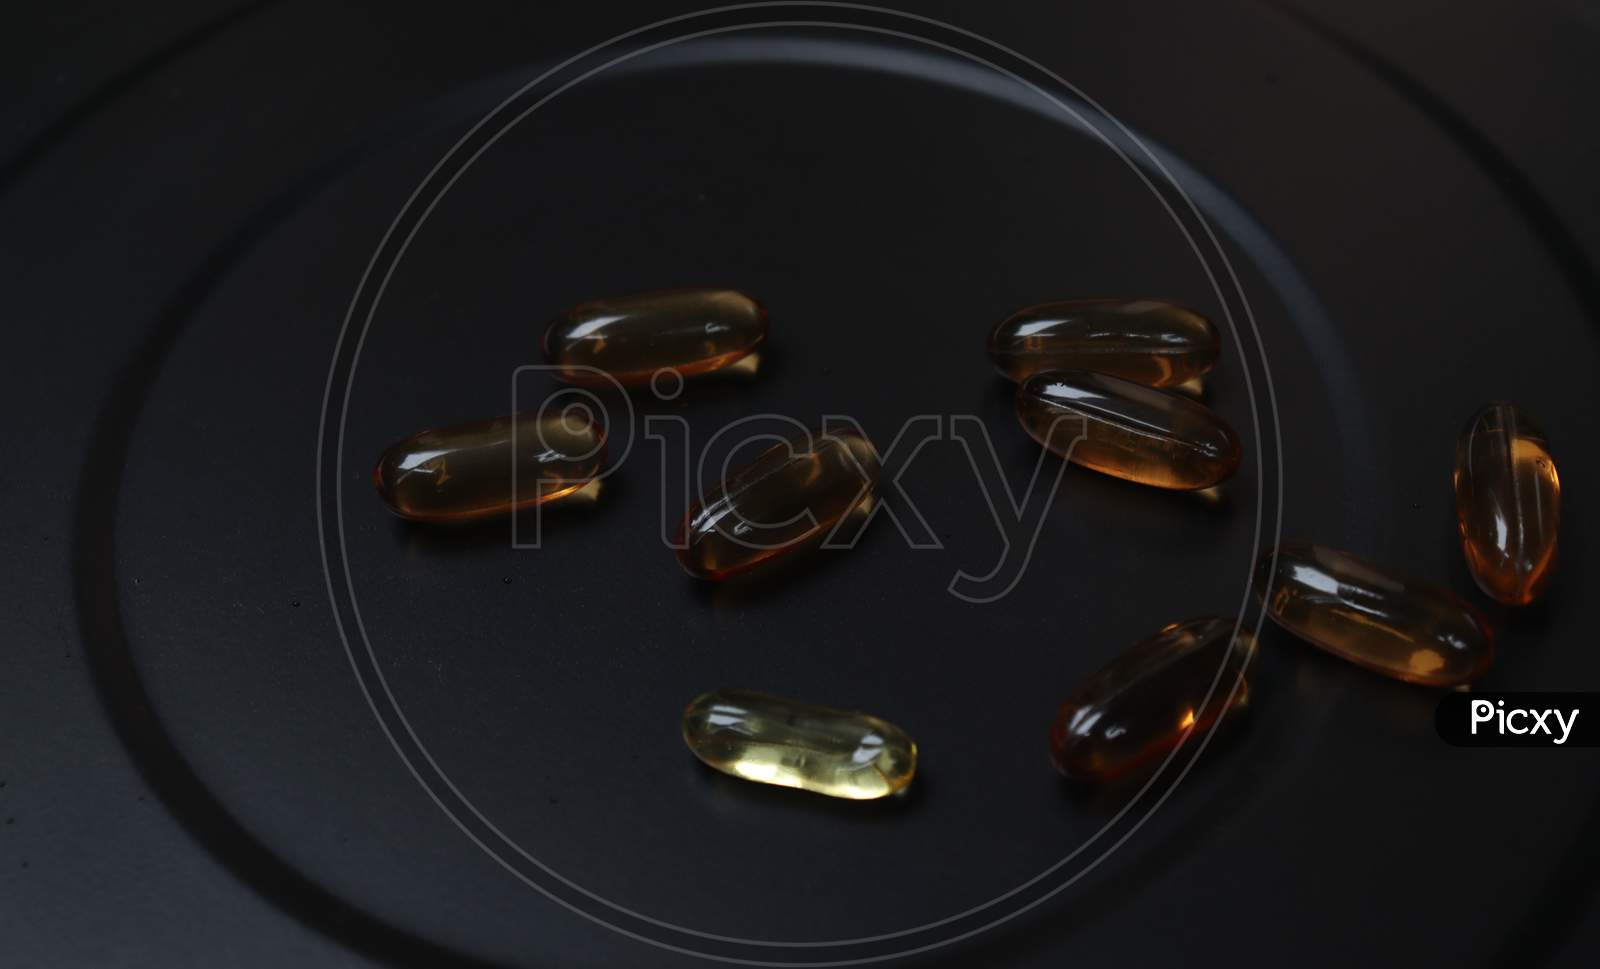 vitamin E capsule with dark background